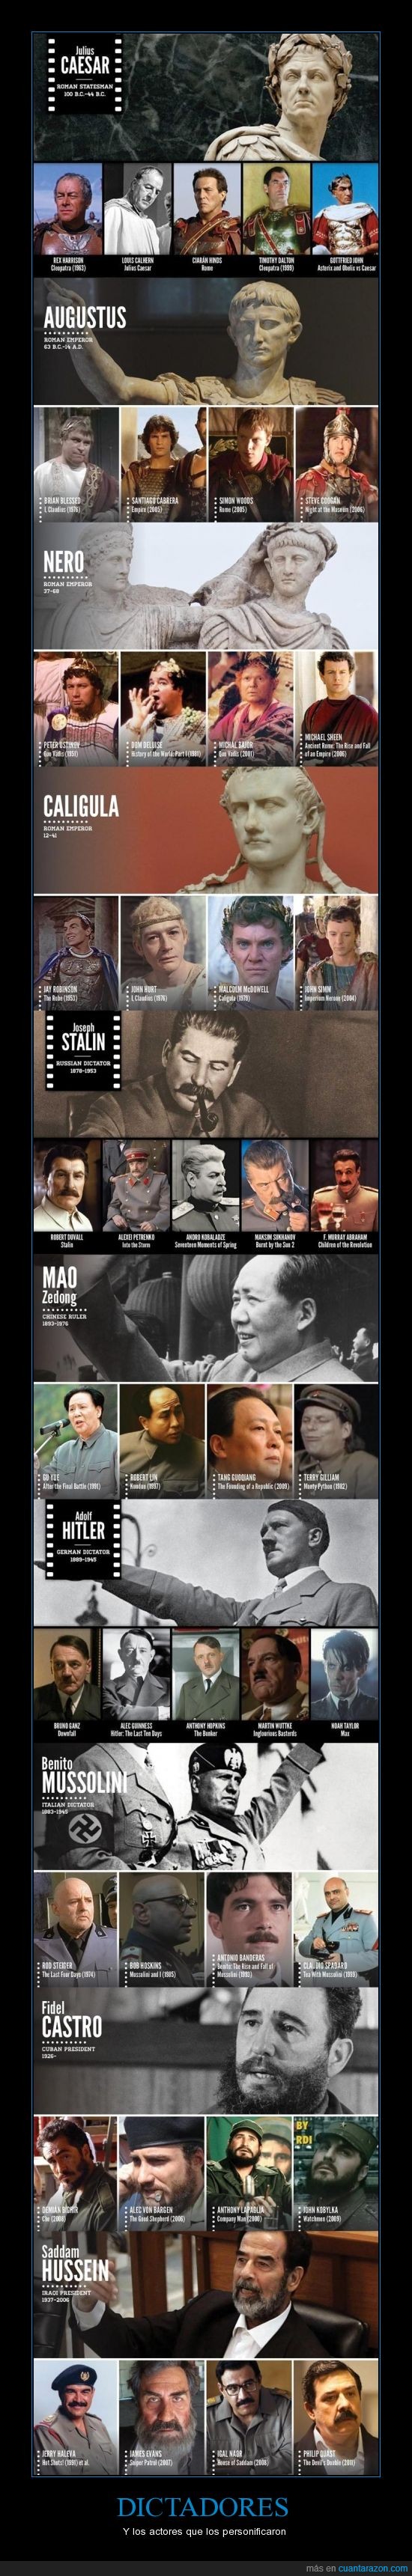 Dictadores,Actores,personificaron,histoia,peliculas,Hitler,Stalin,Nazismo,Comunismo,Saddam,Guerra,Asesinos,muerte,matanza,Fidel,Mao,China,Política